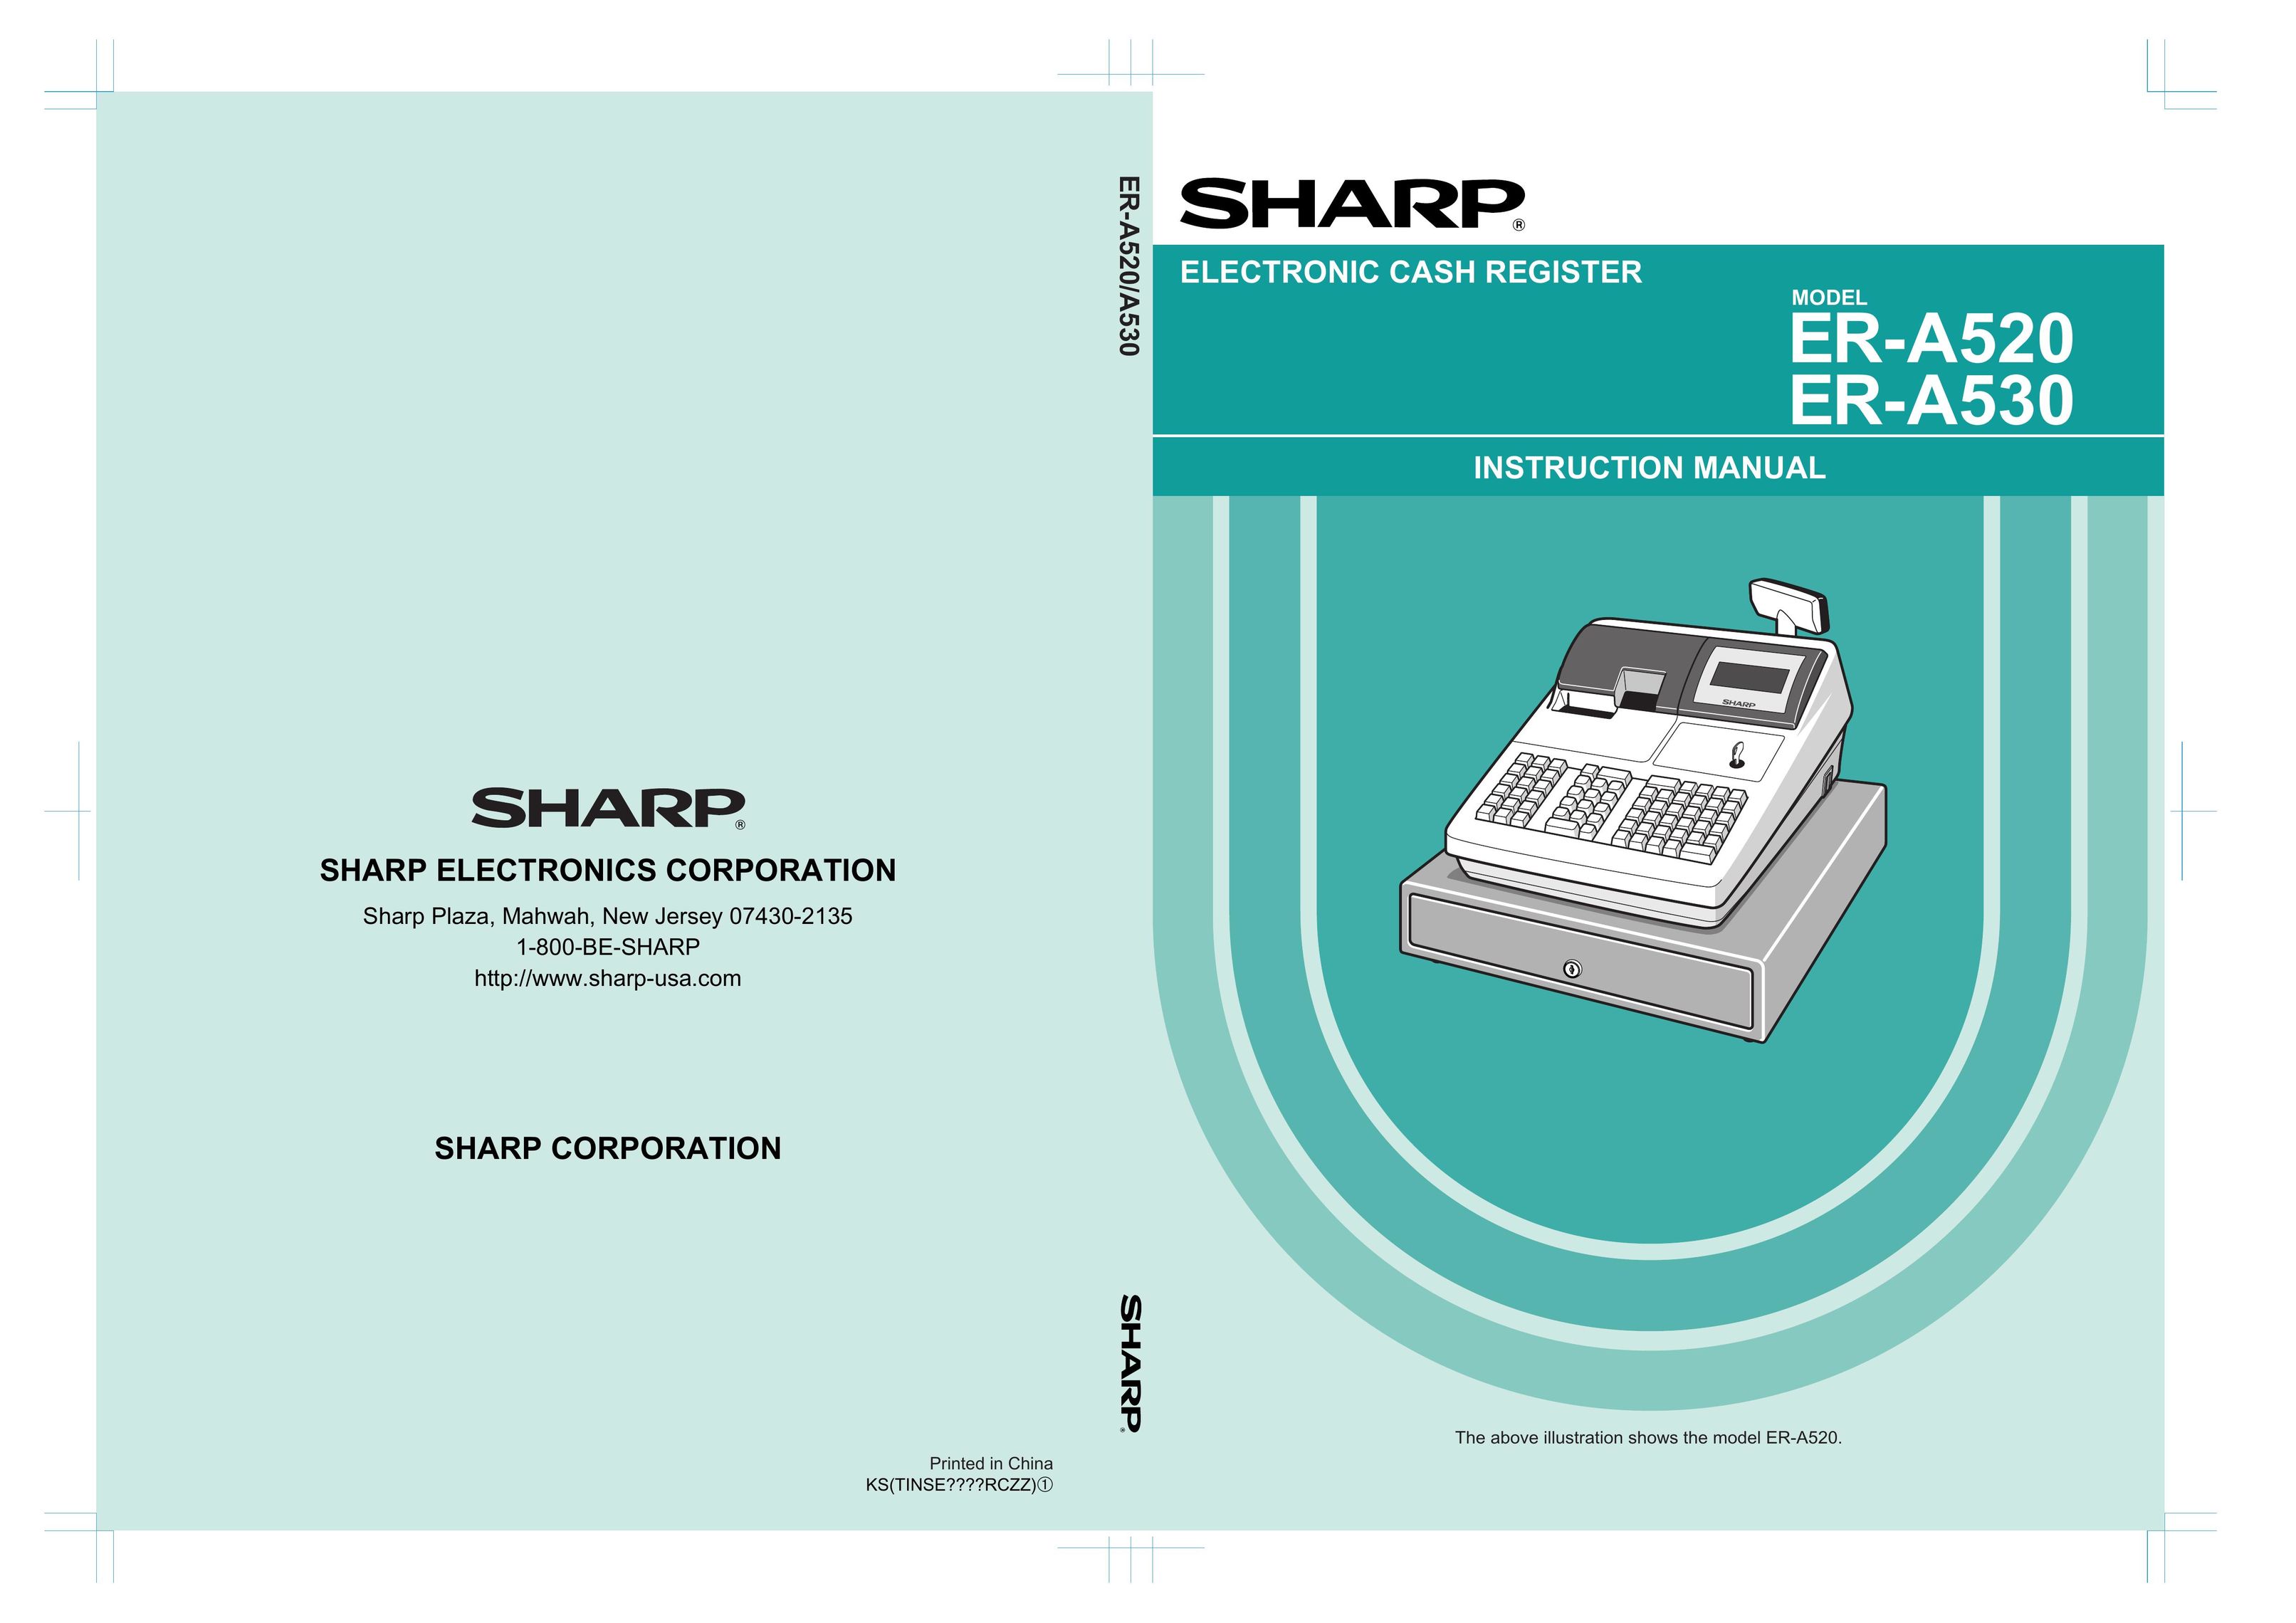 Sharp ER-A520 Cash Register User Manual